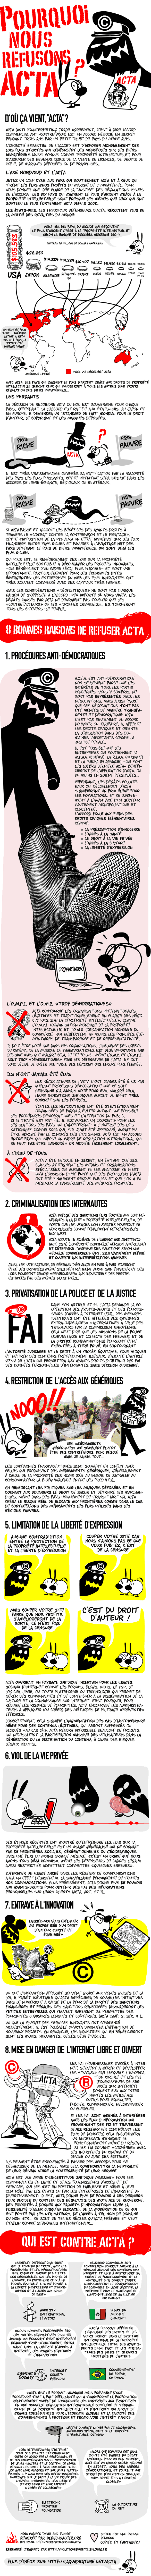 Infographie: Pourquoi nous refusons ACTA?